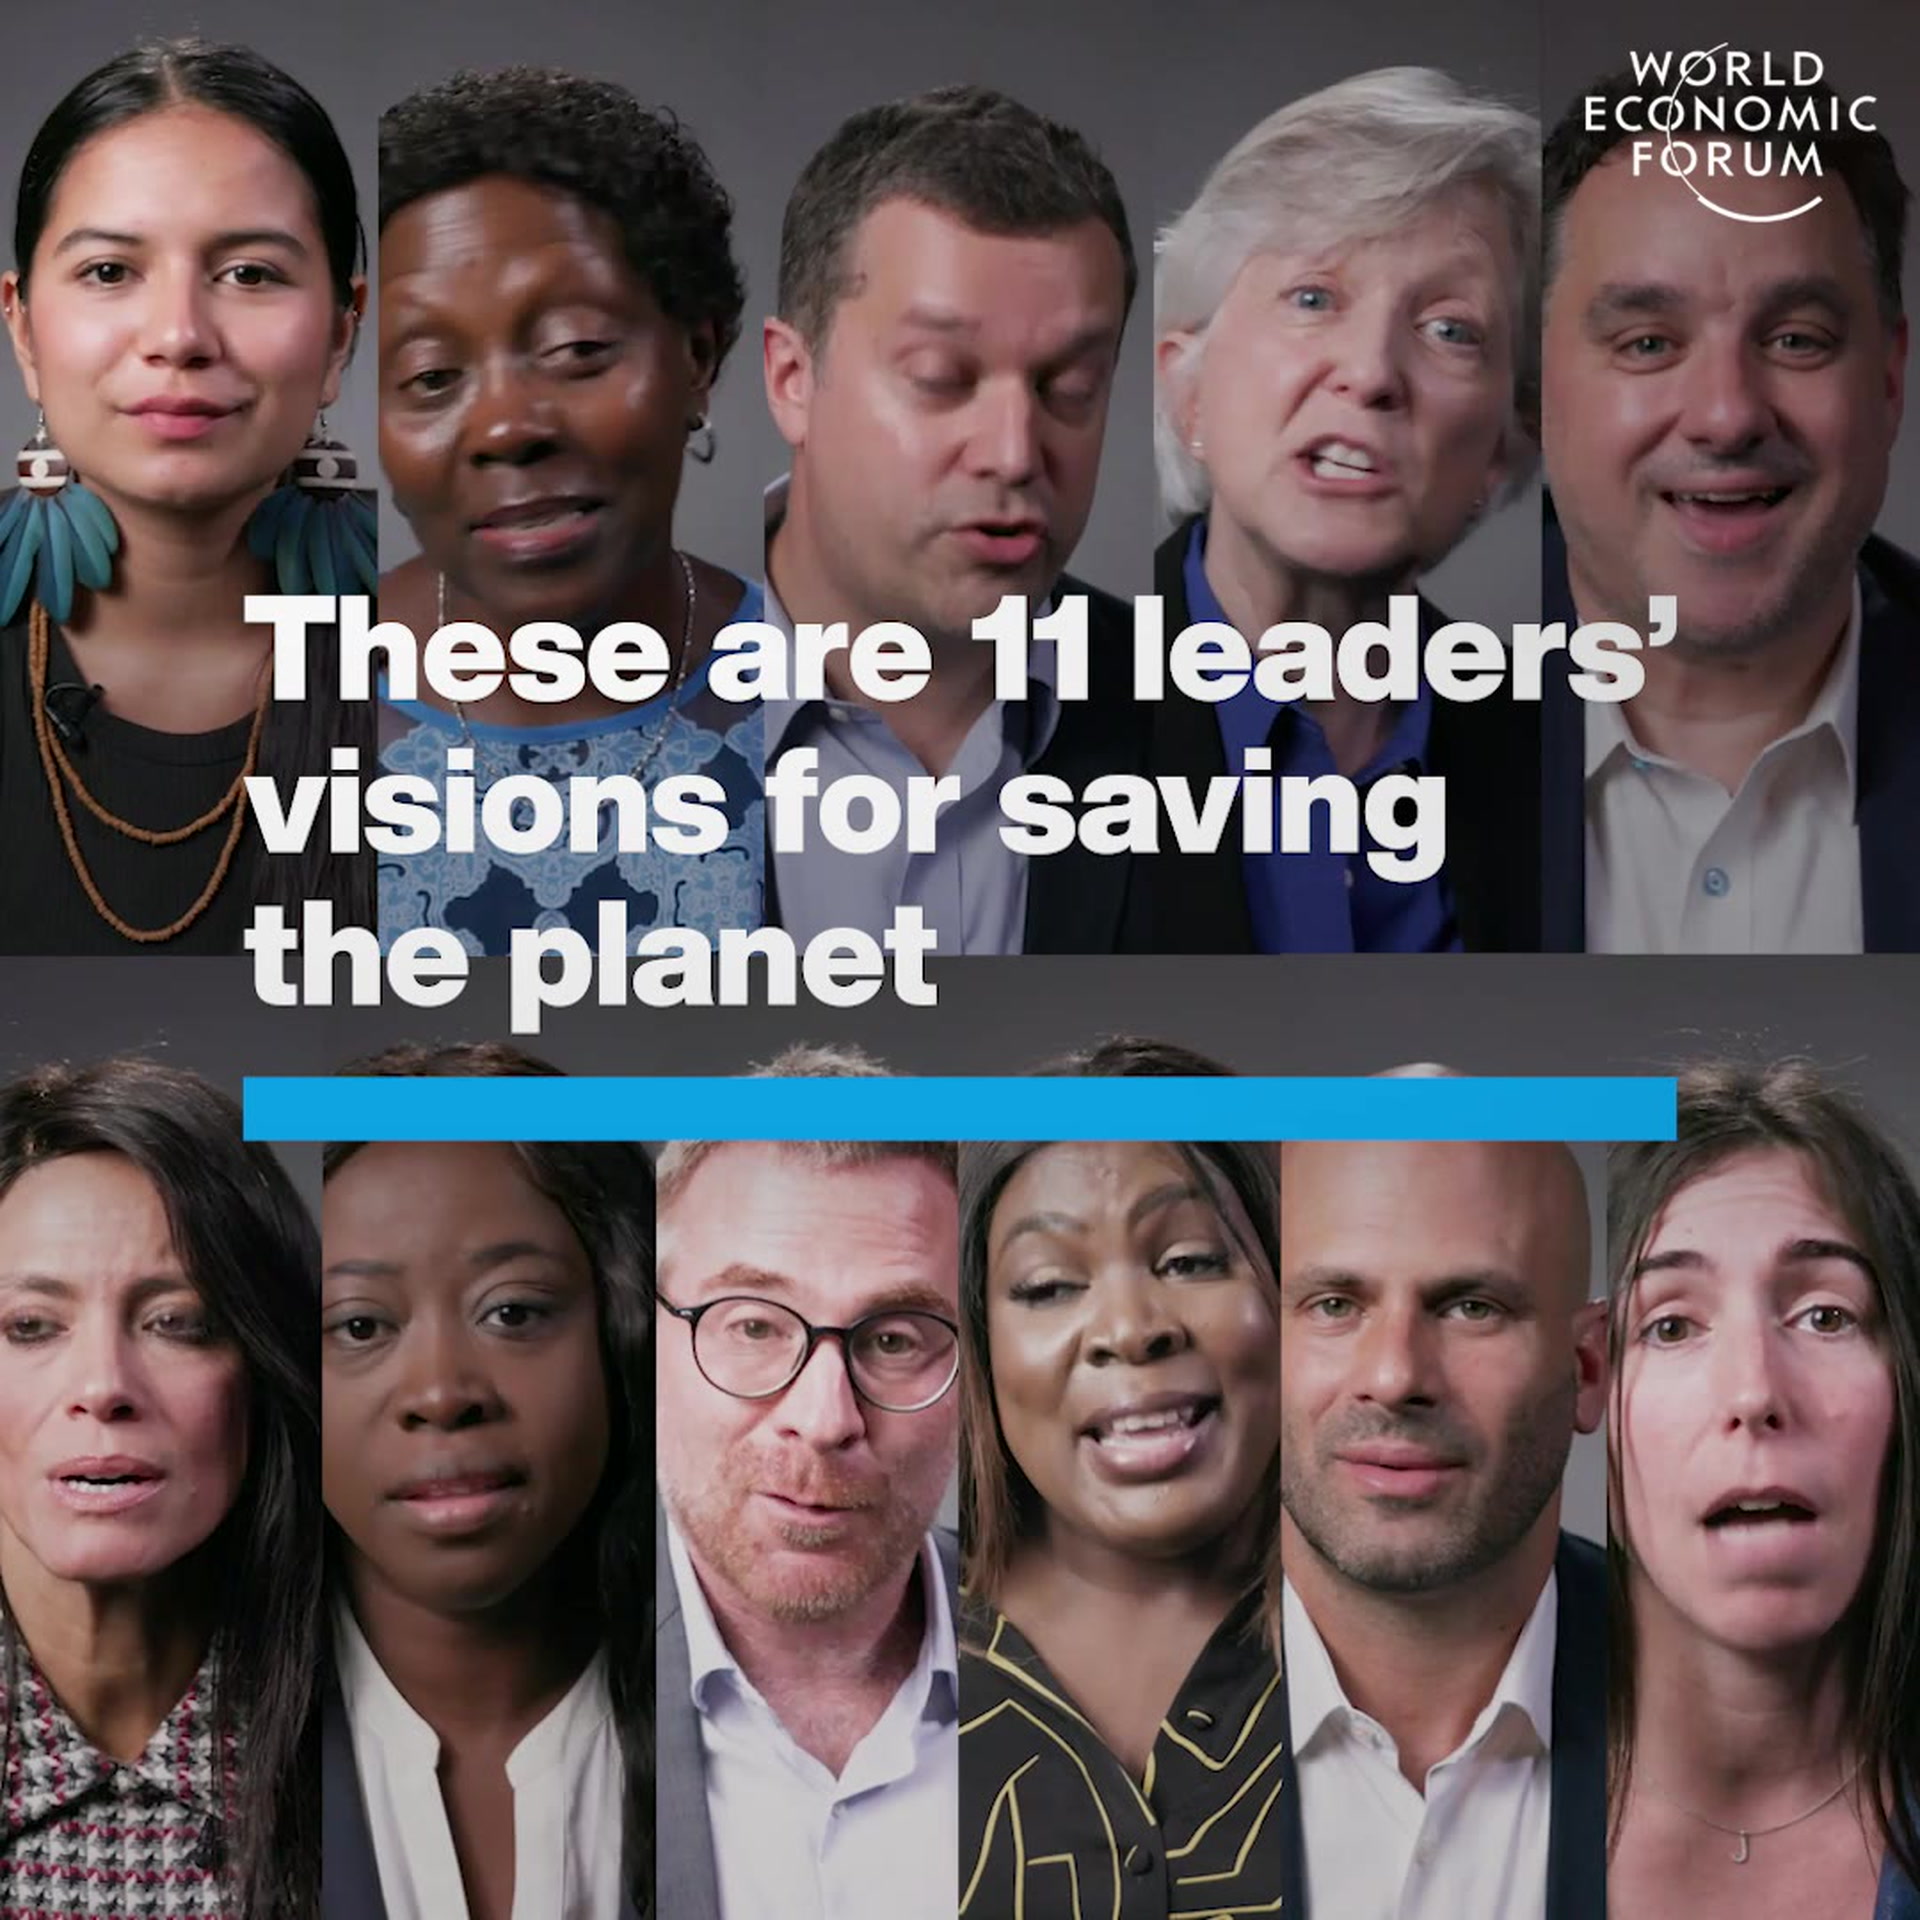 11 Klimaschützer teilen ihre Visionen zur Rettung des Planeten